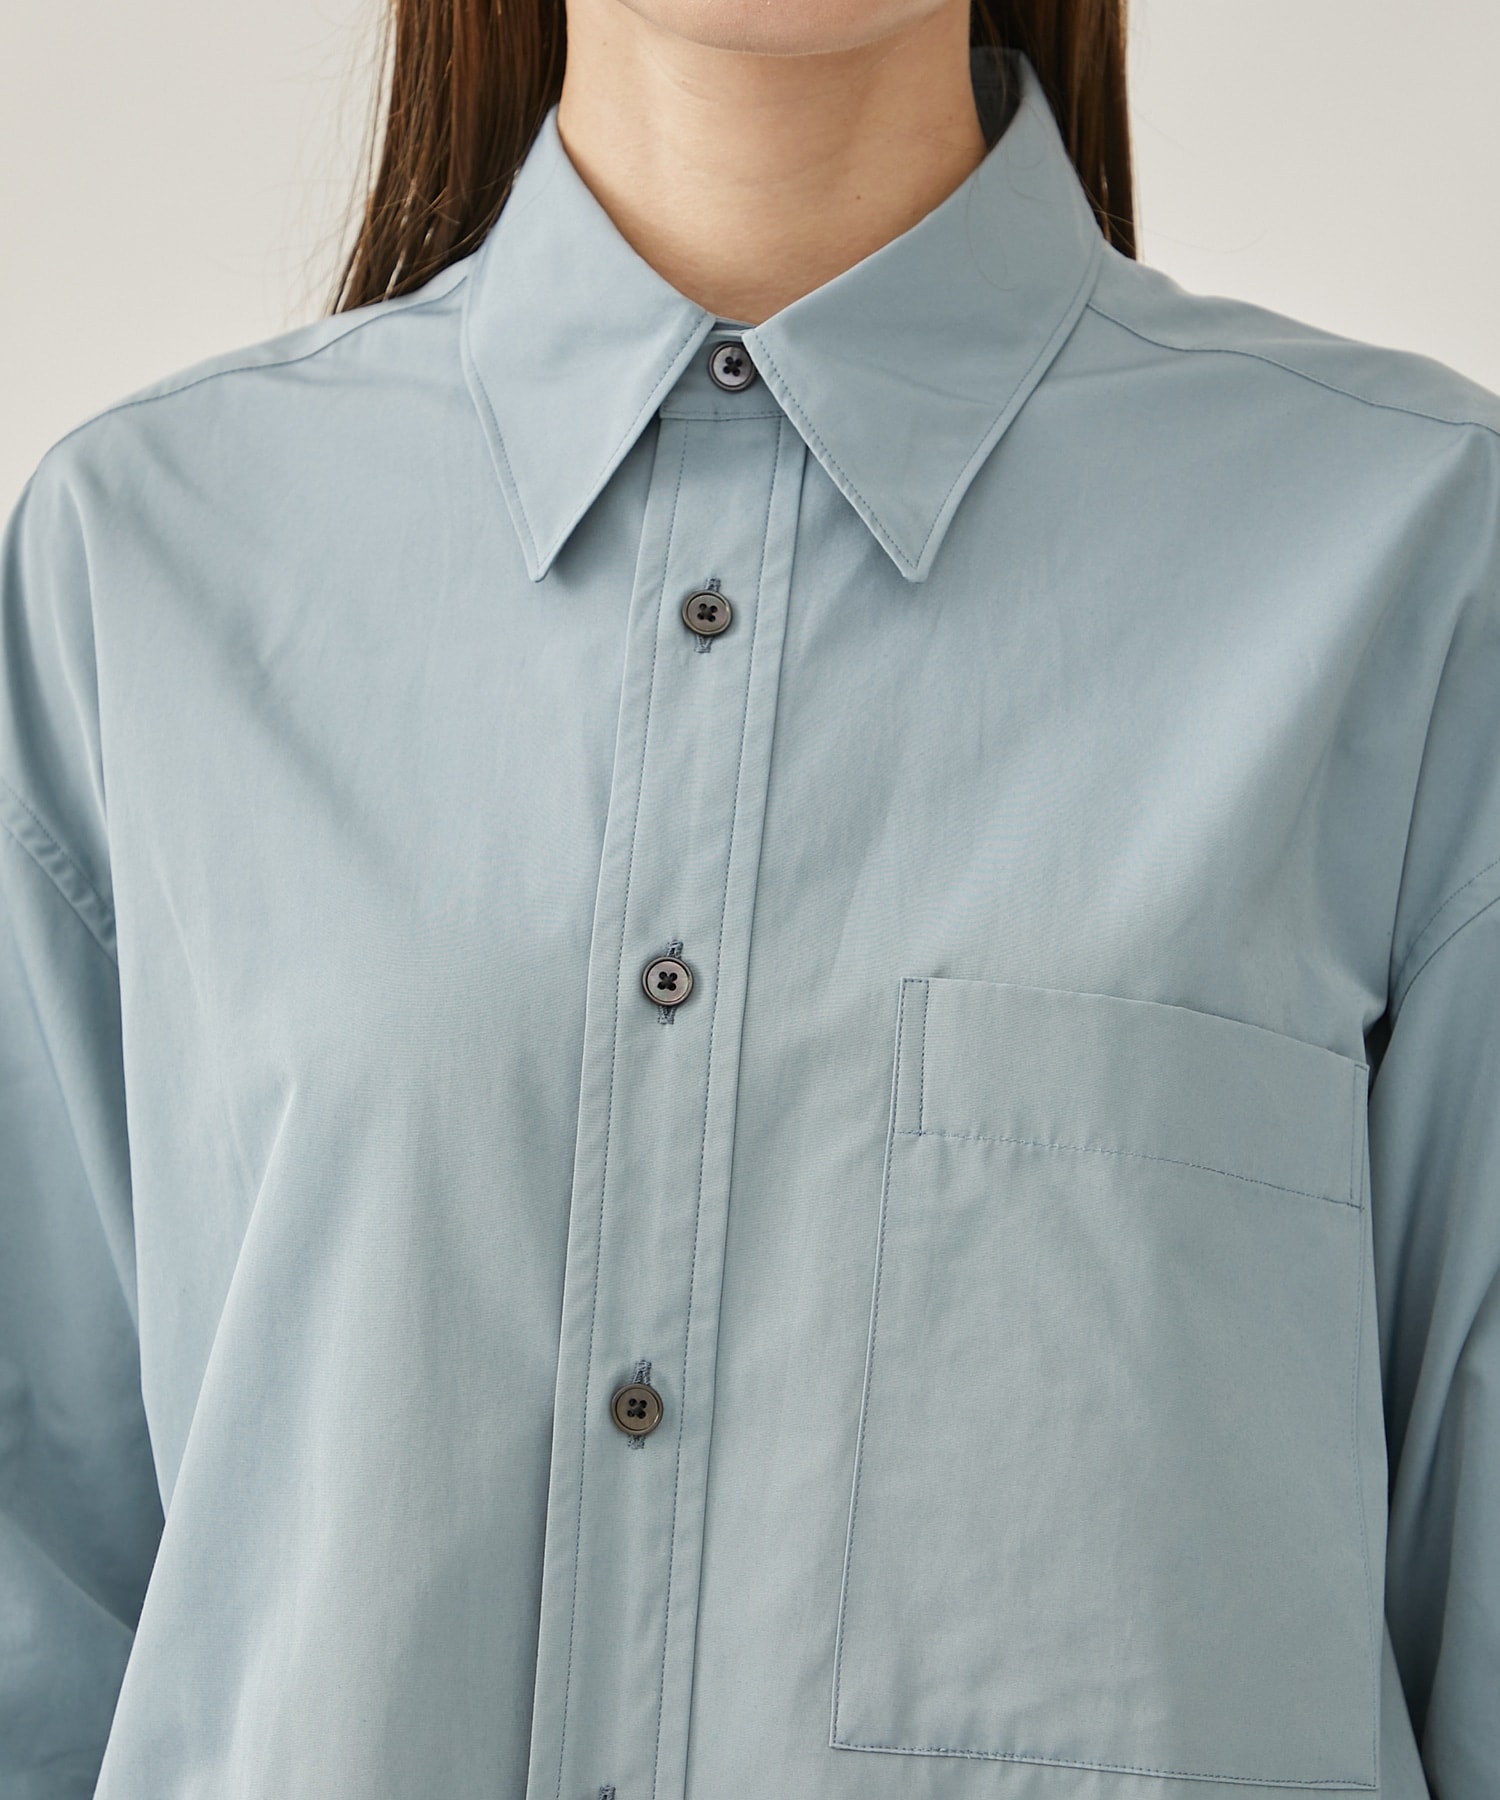 Cotton polyester taffeta over shirt 08sircus